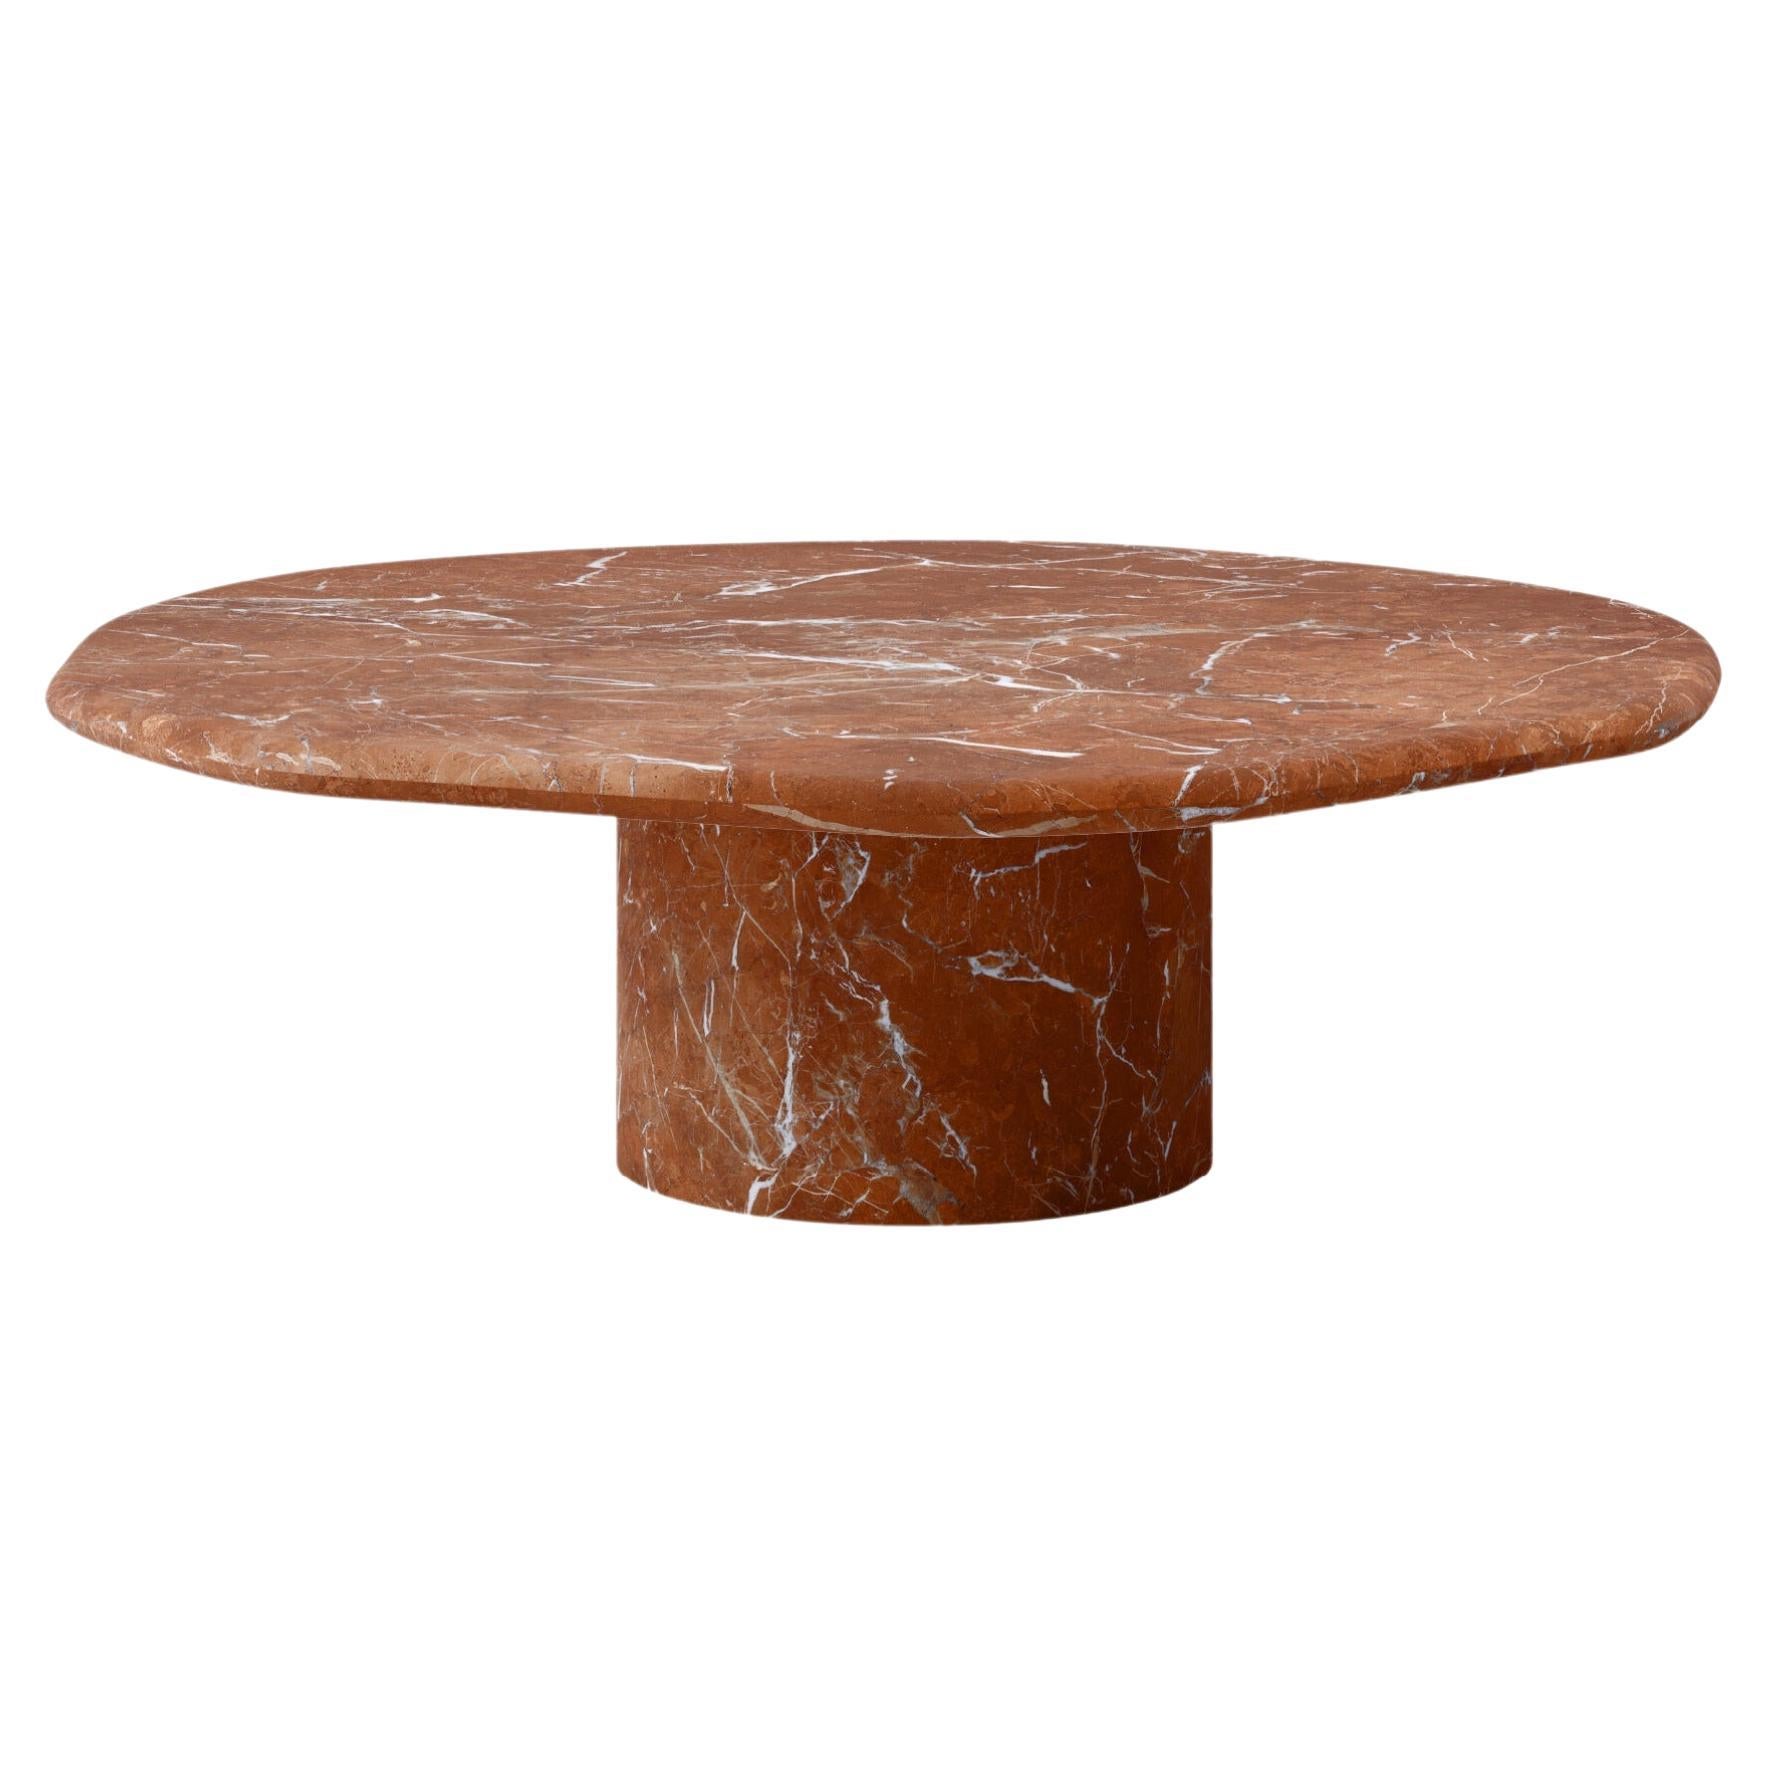 FORM(LA) Lago Round Coffee Table 36”L x 36”W x 14”H Rojo Alicante Marble For Sale